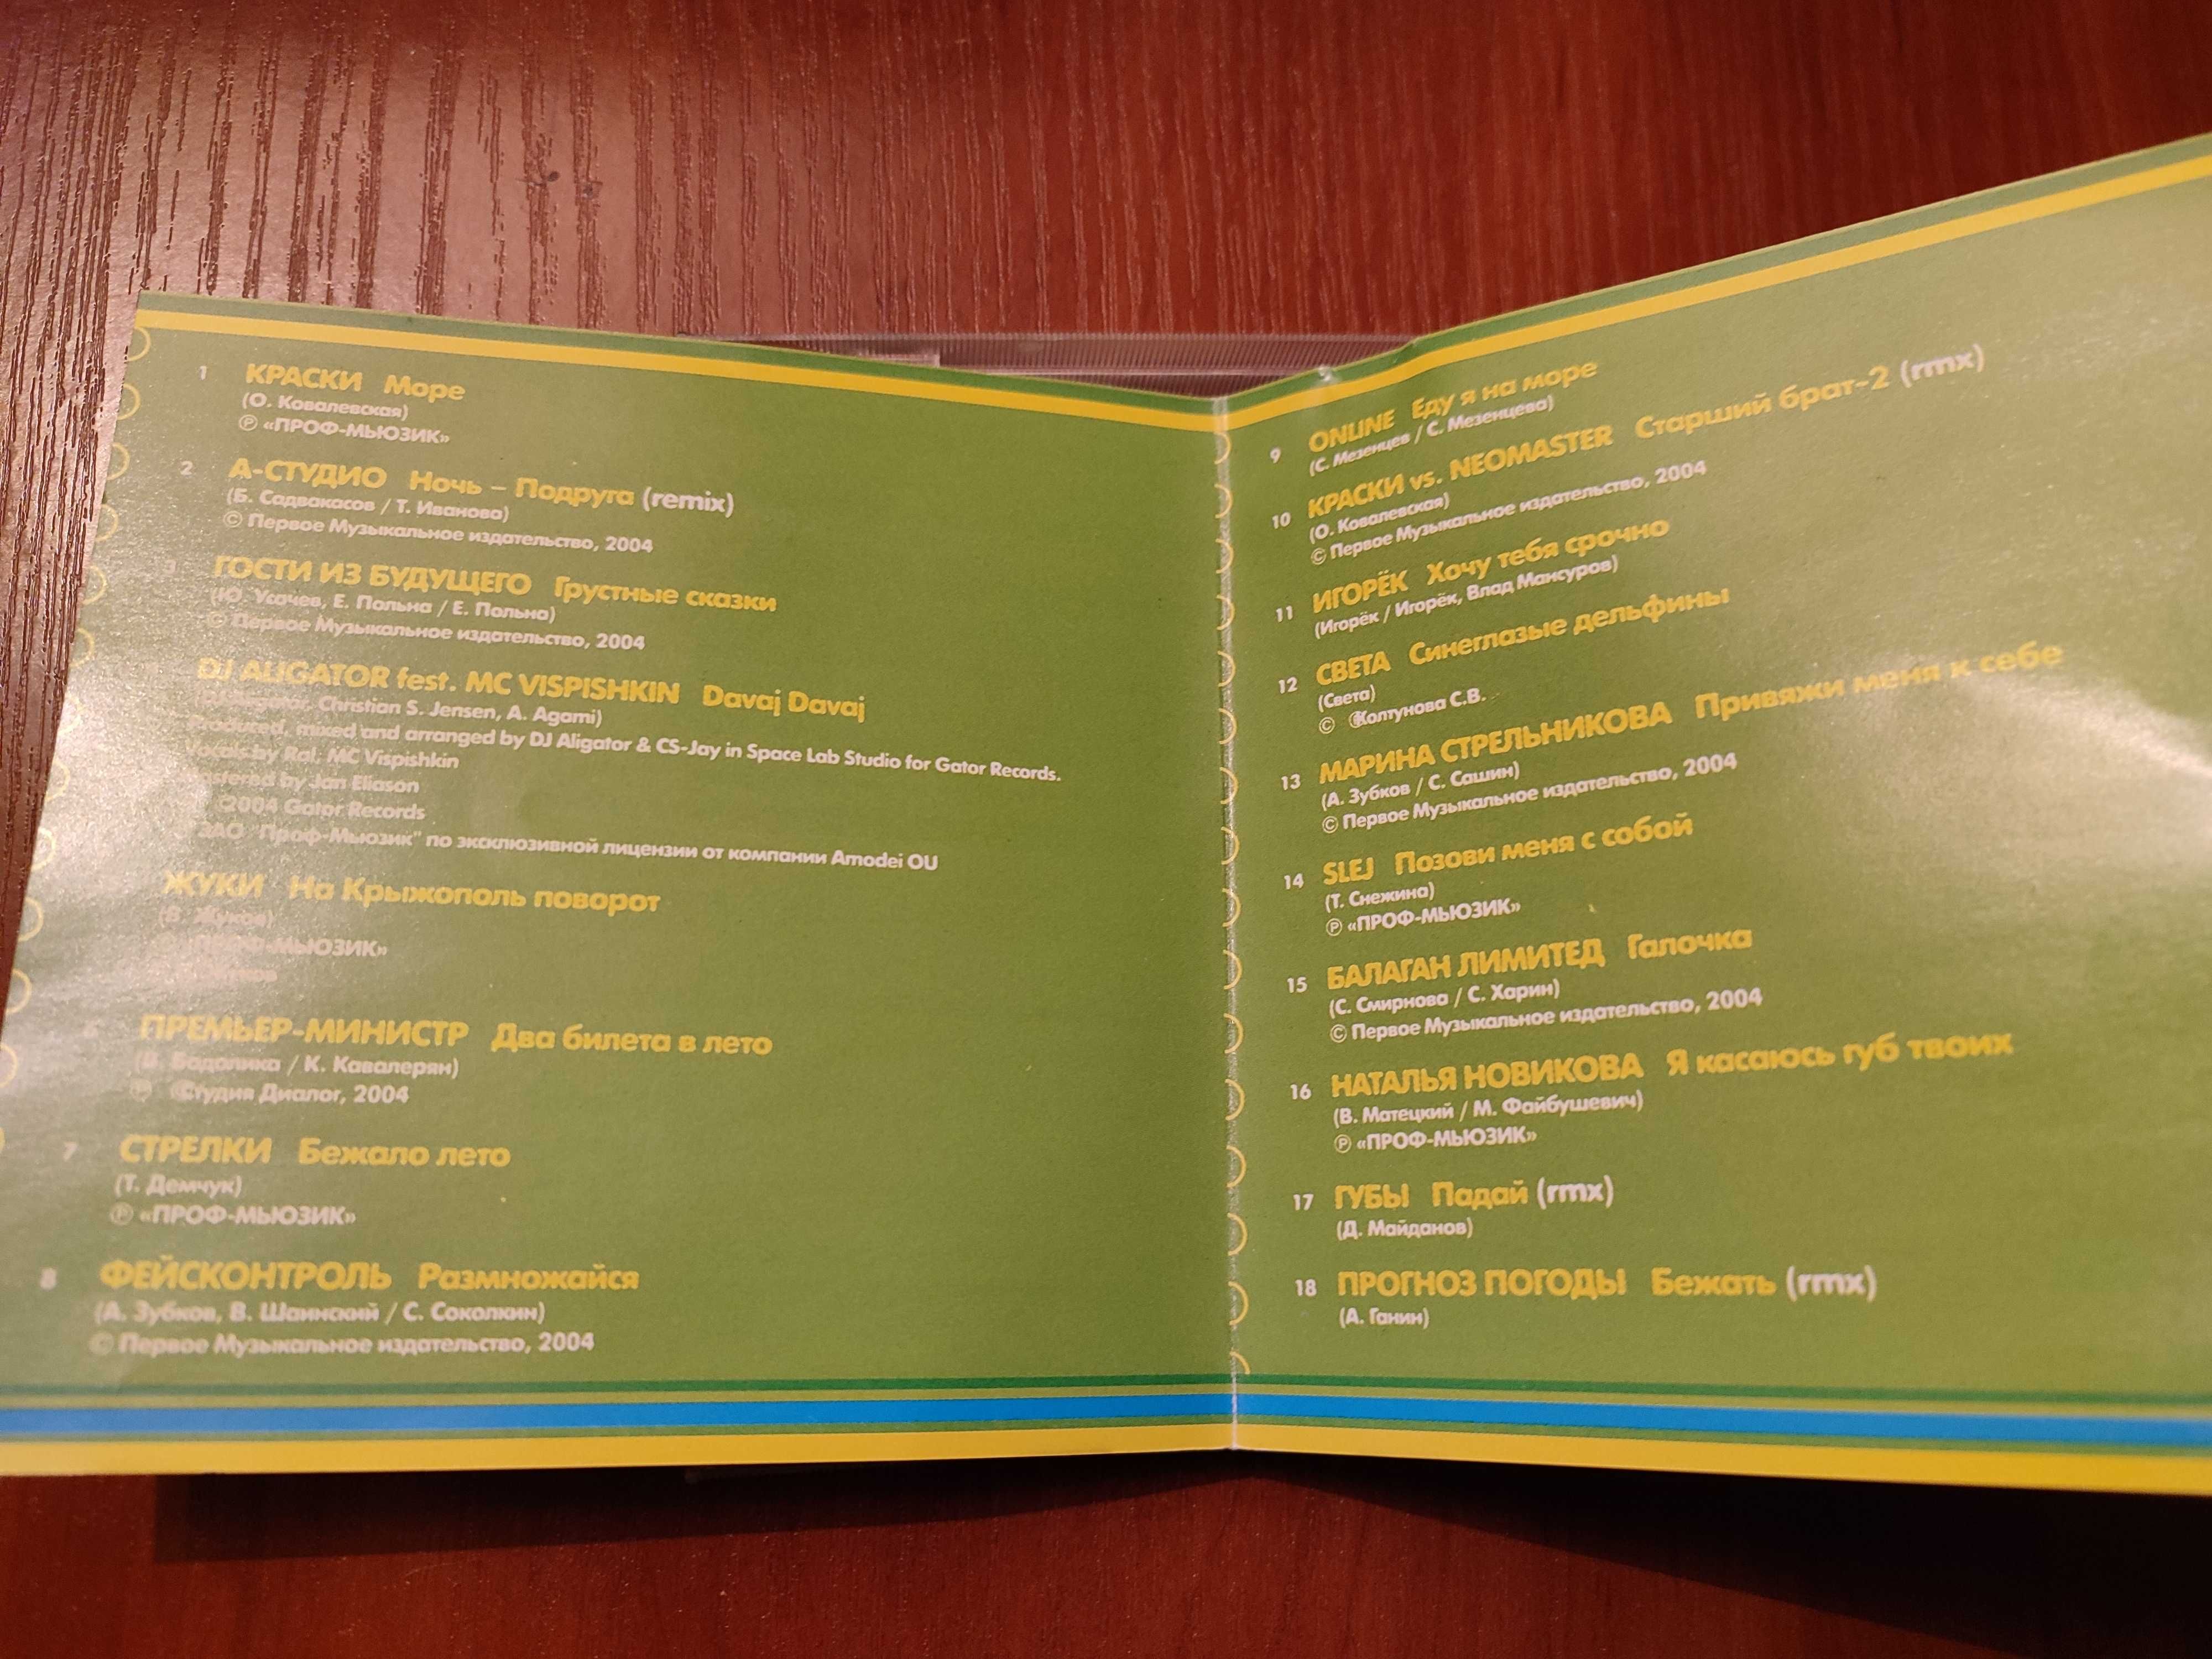 Музыкальный CD группа Краски альбом Краски лета 2004 год